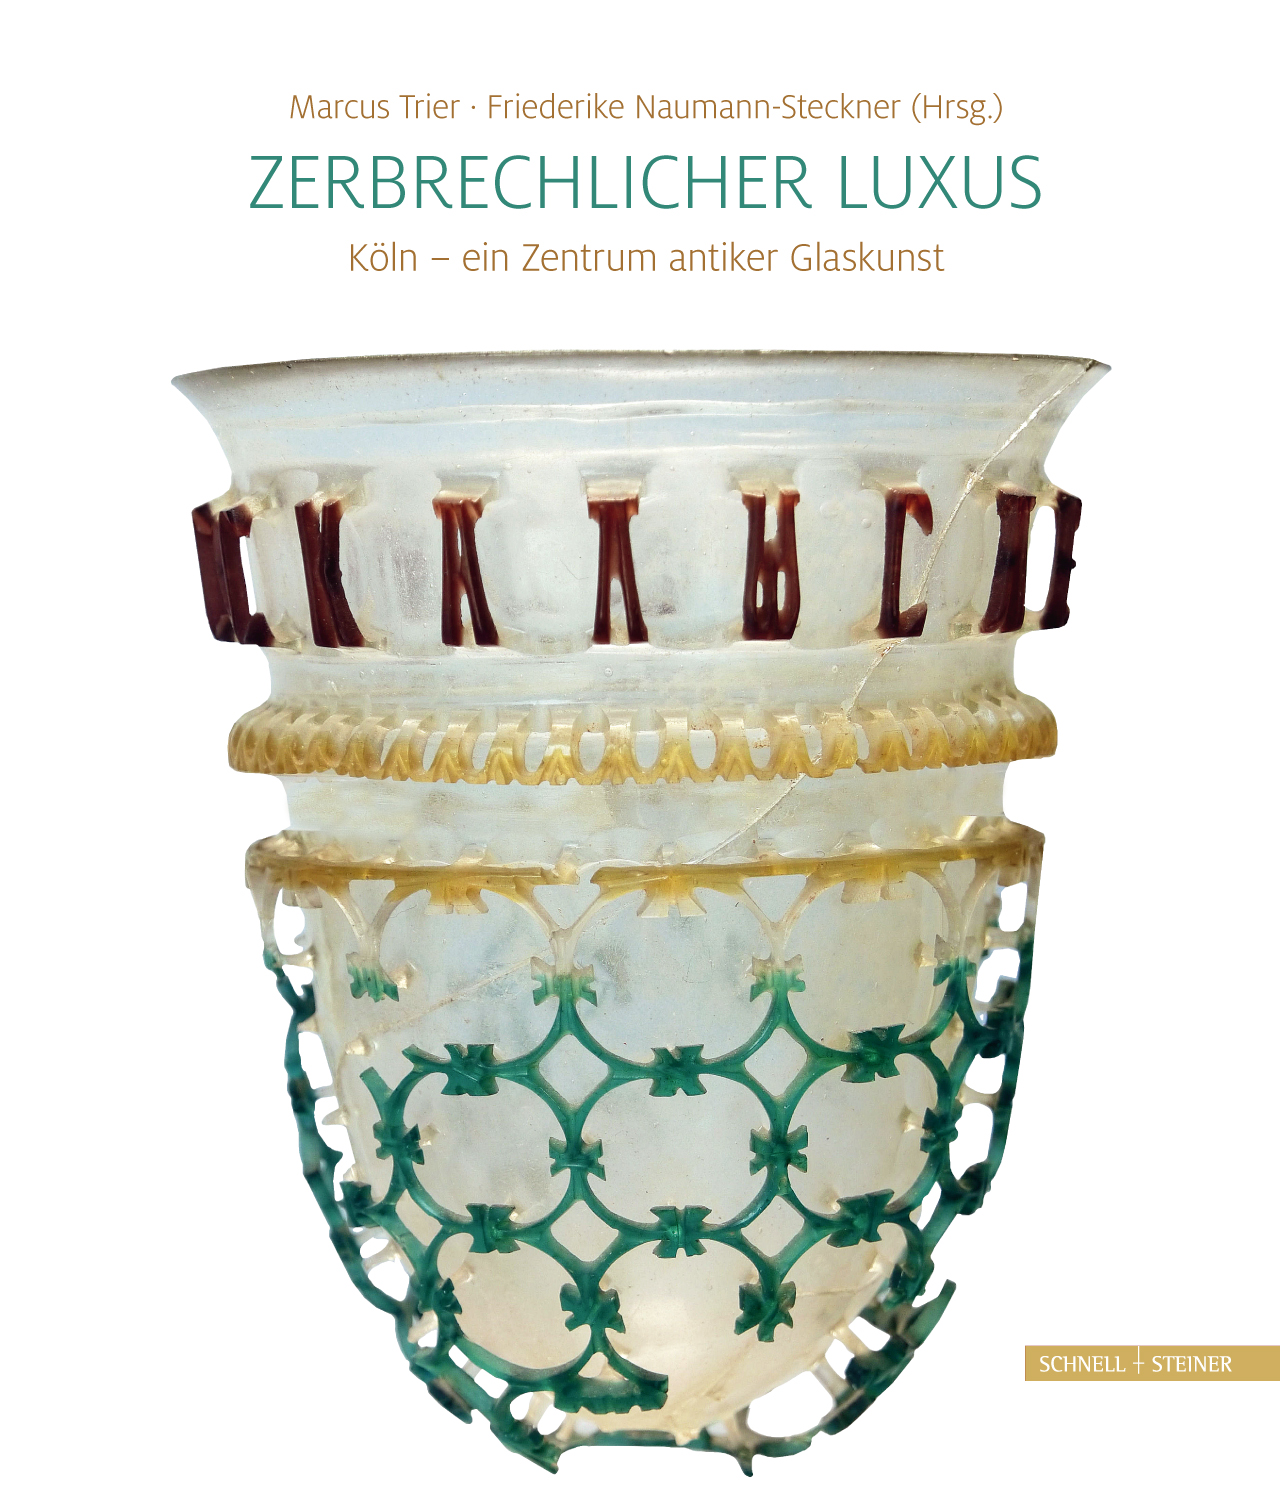 Zerbrechlicher Luxus | Köln - ein Zentrum antiker Glaskunst